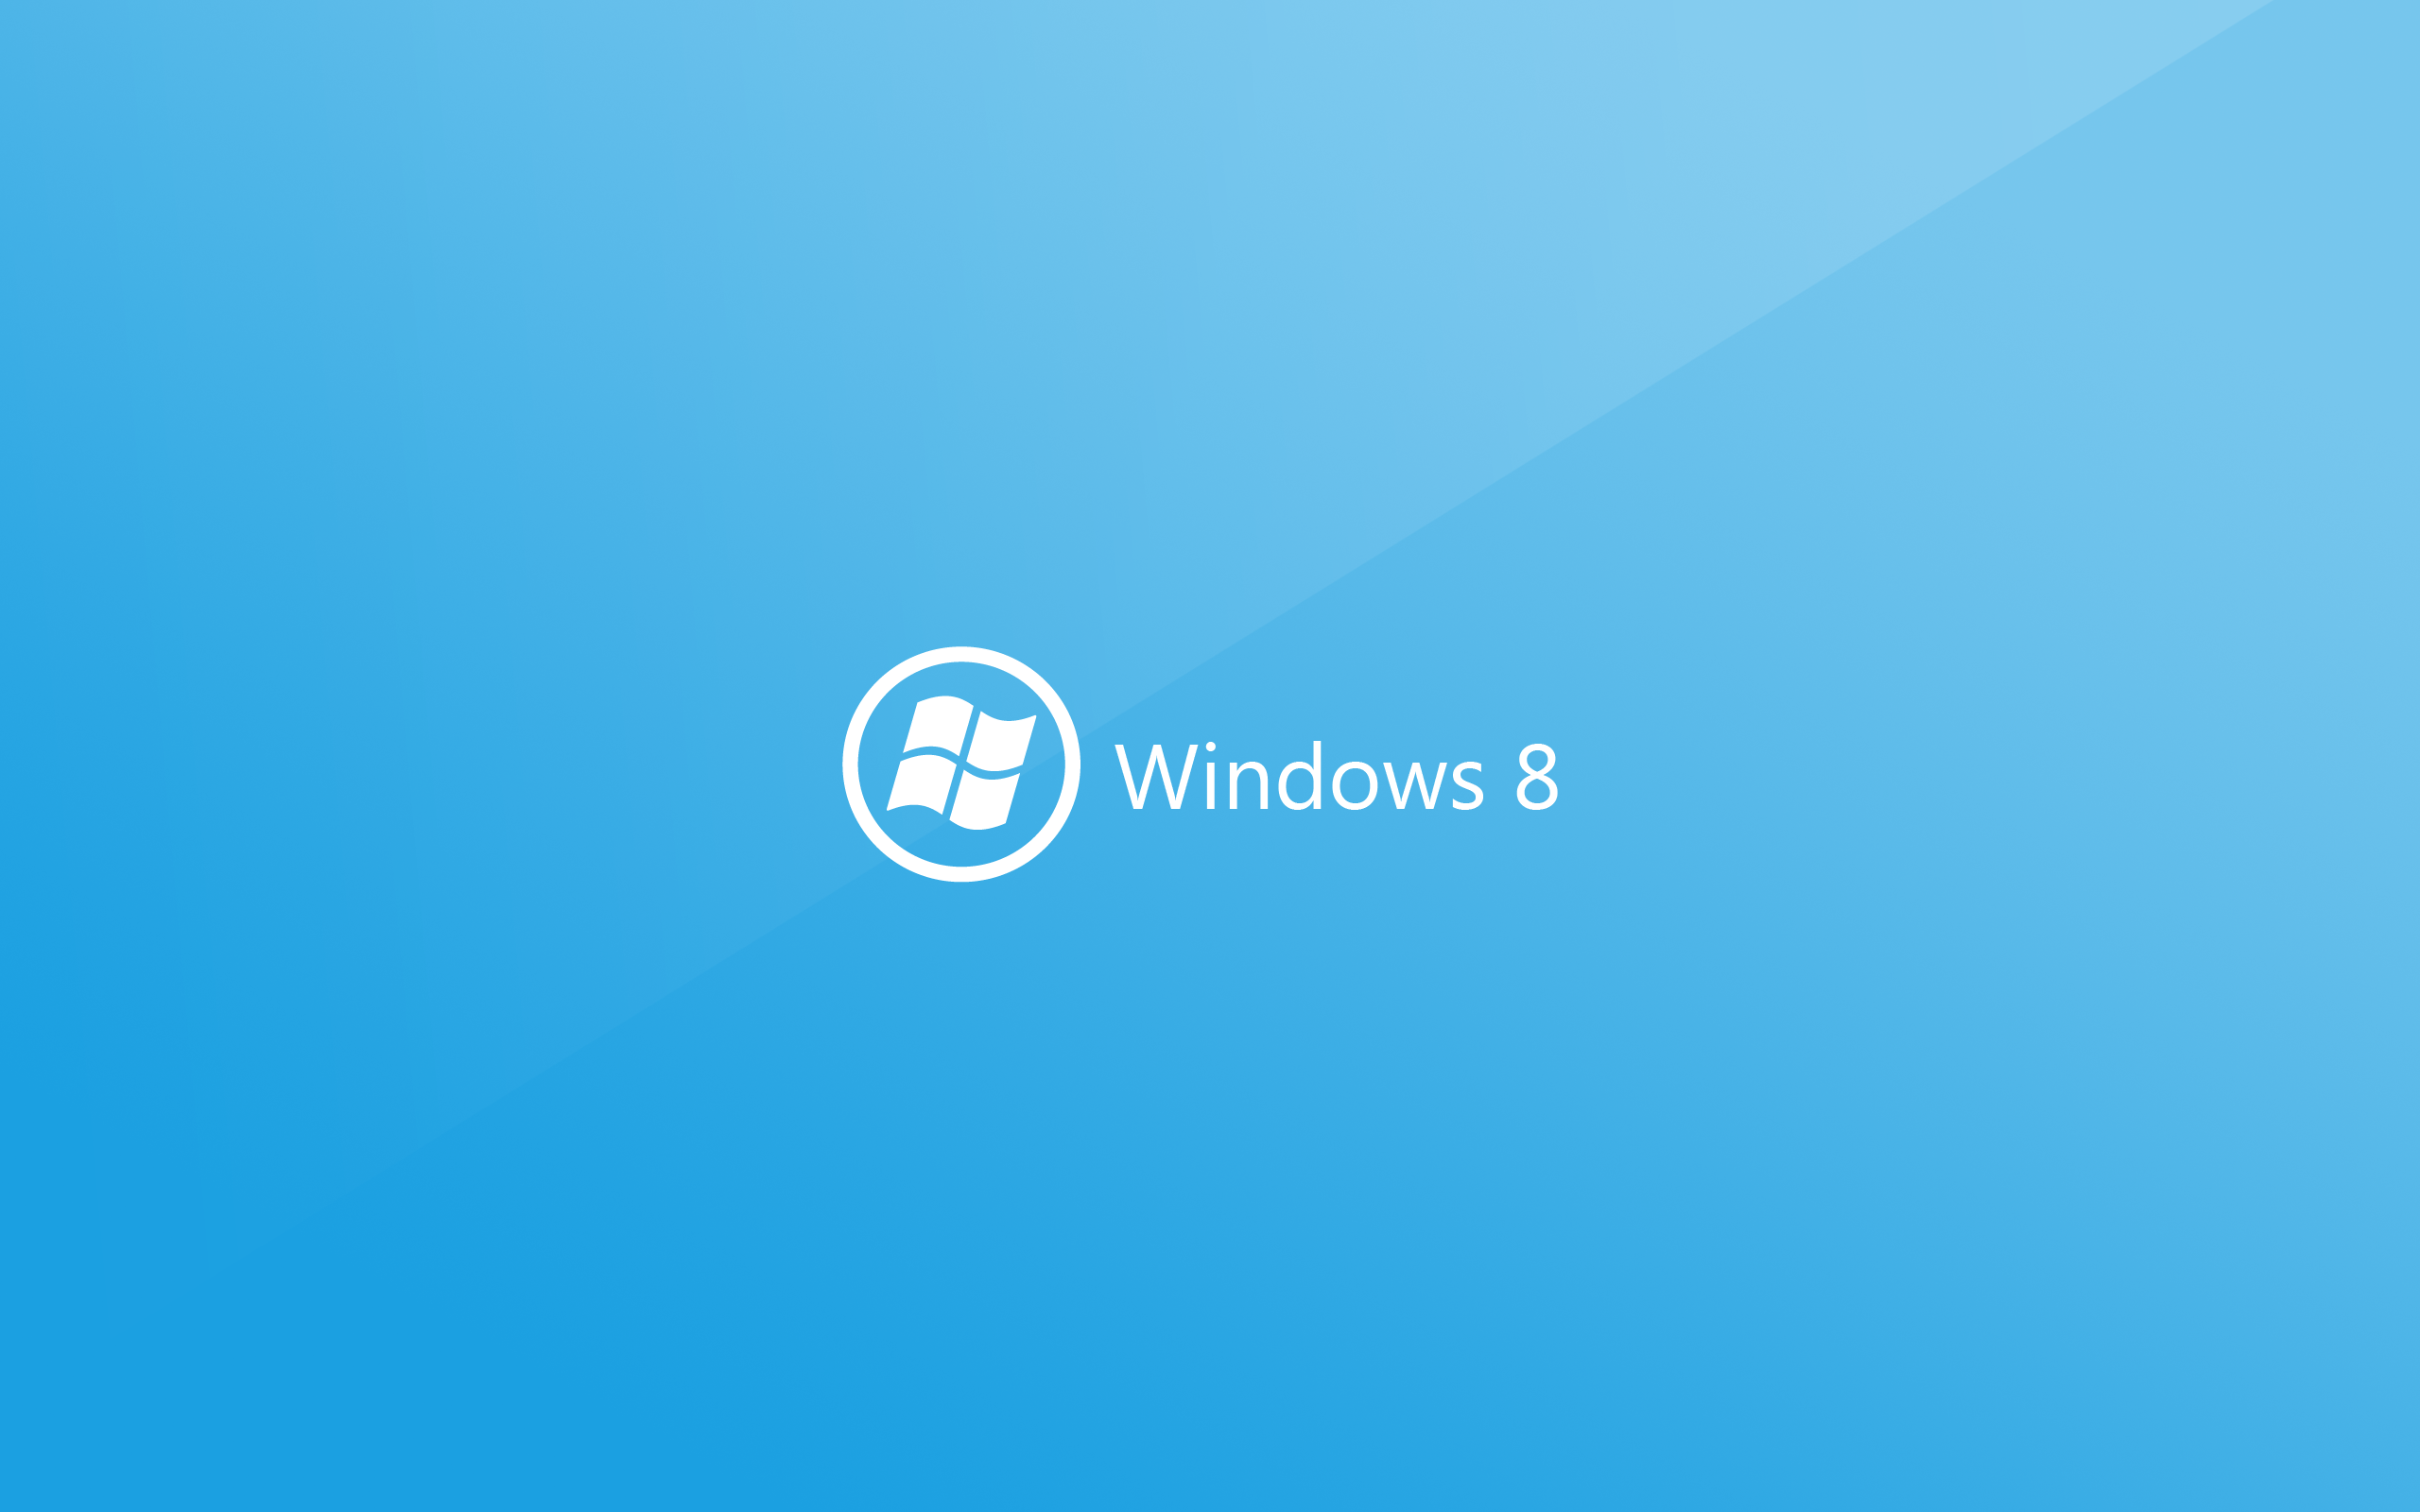 Hình nền  1920x1200 px Windows 8 Blue 1920x1200  wallhaven  809362  Hình  nền đẹp hd  WallHere